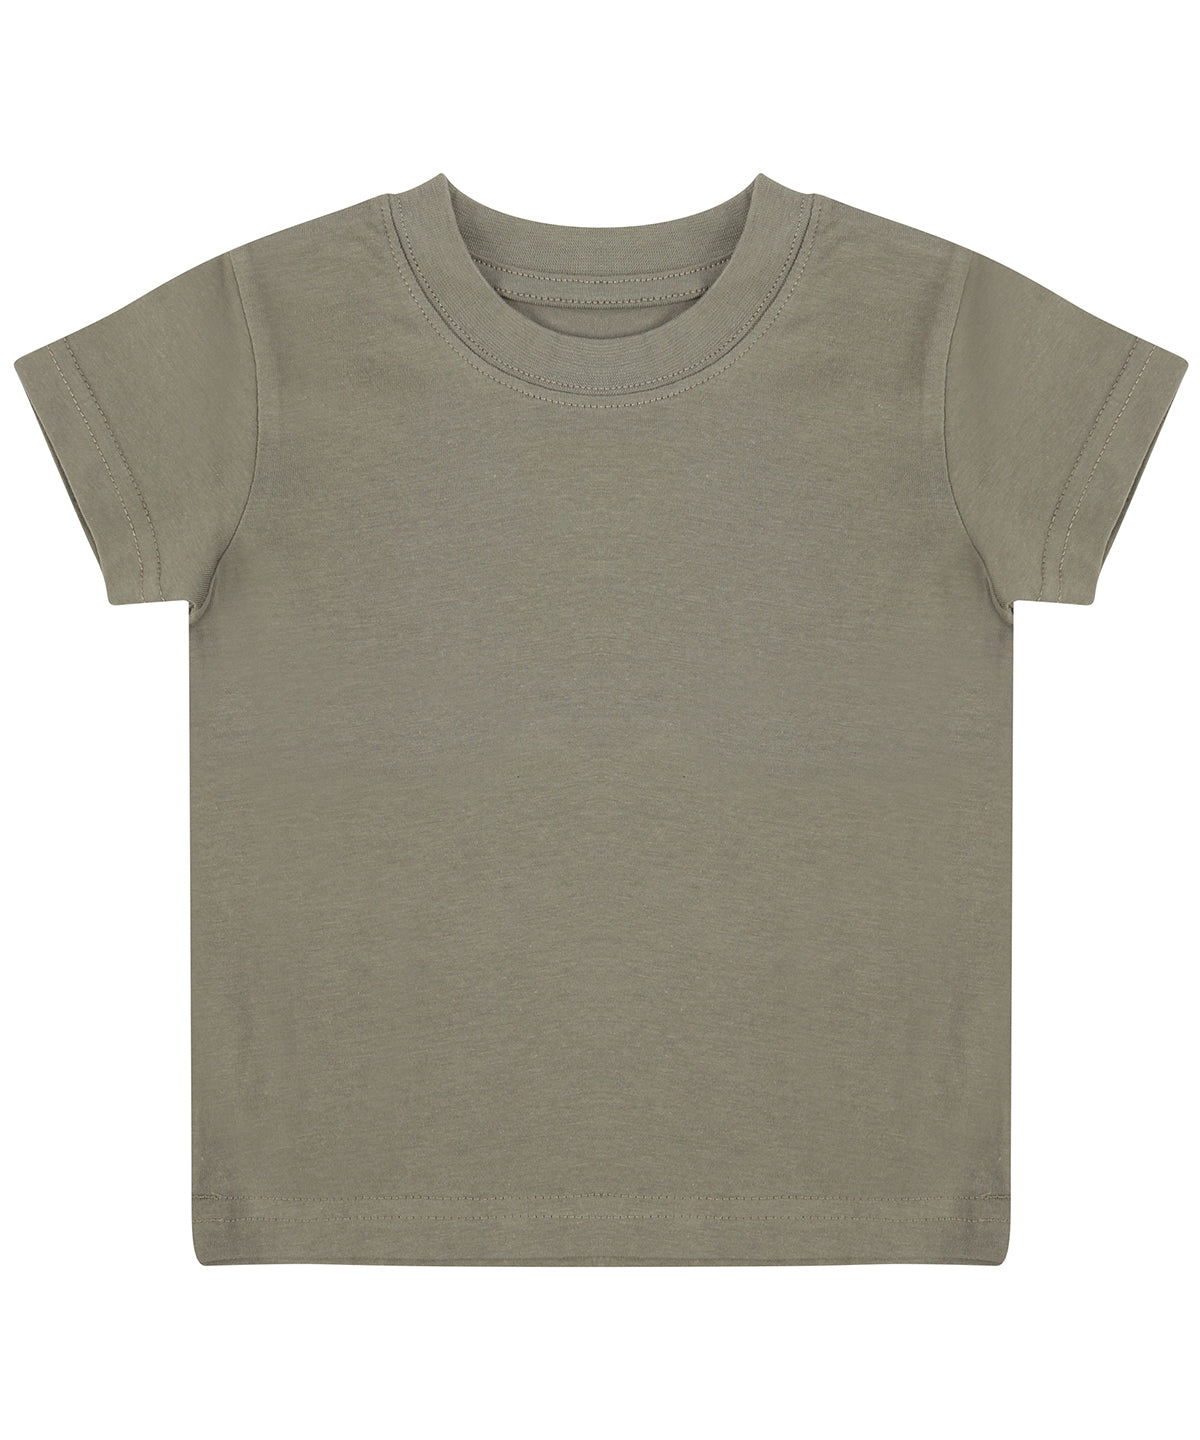 Stuttermabolir - Baby/toddler T-shirt